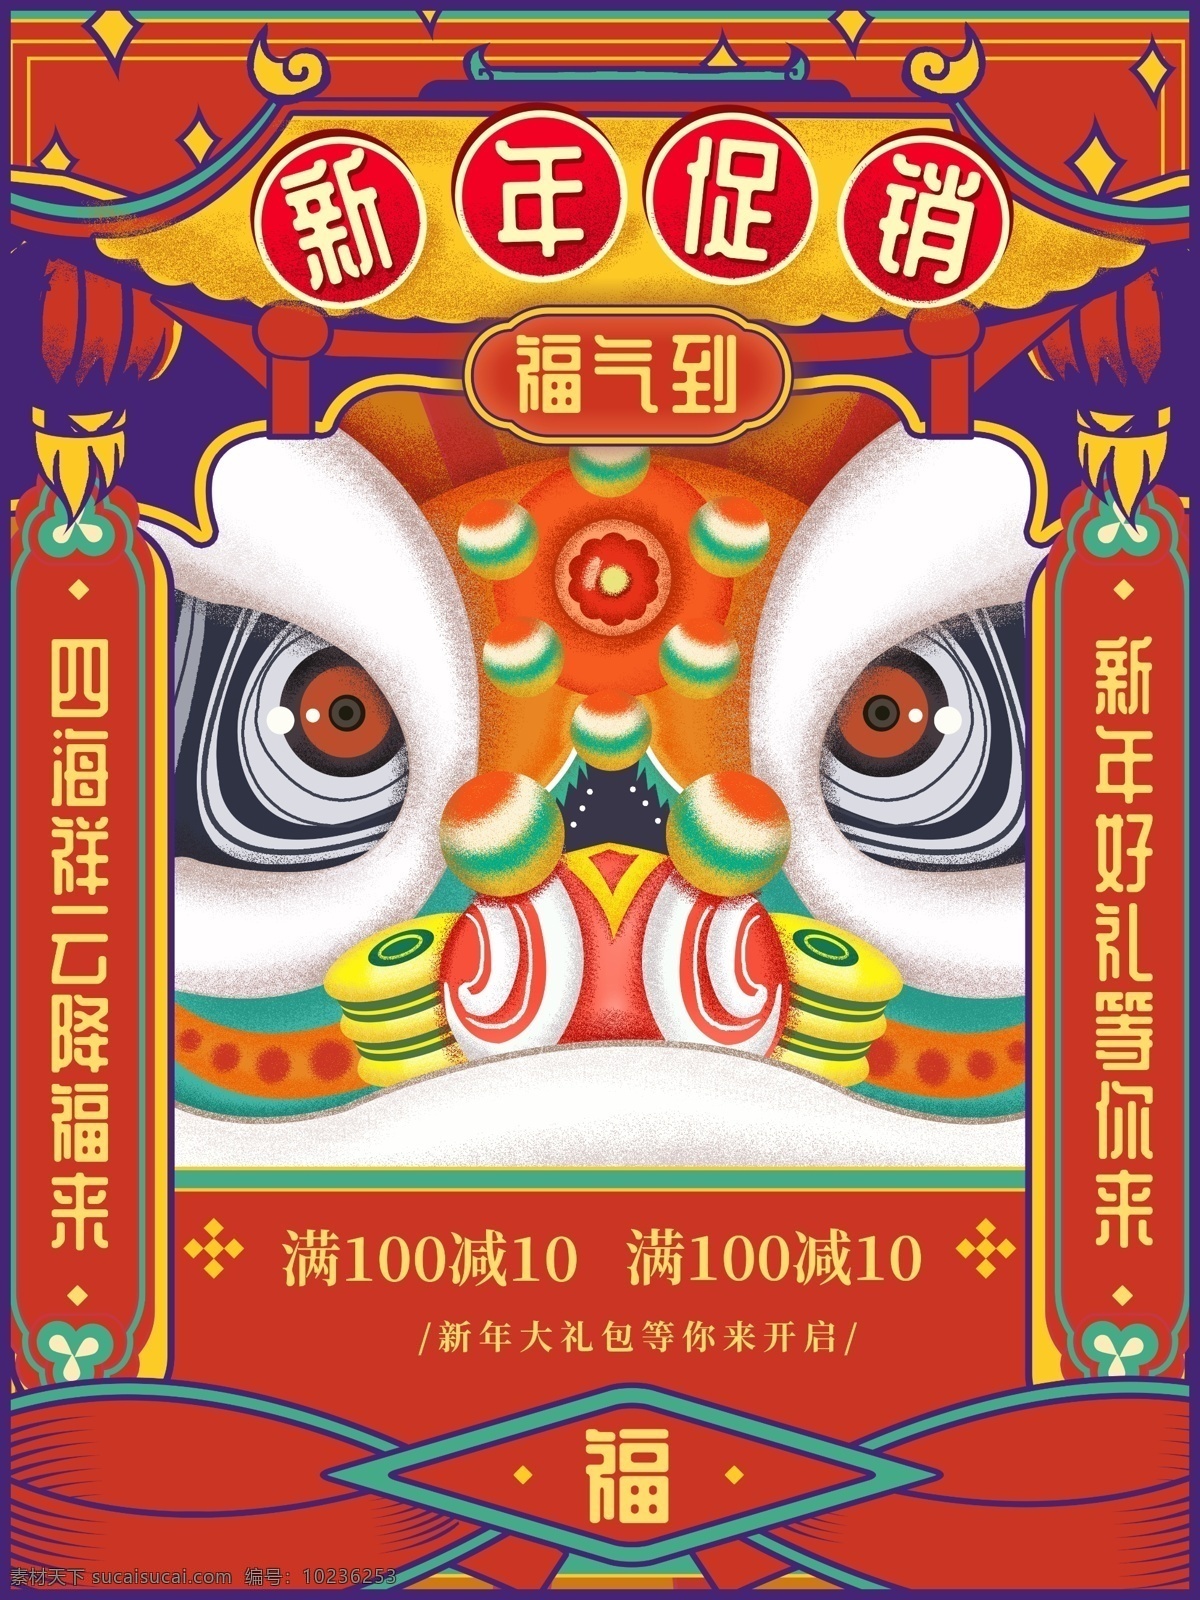 原创 手绘 中国 风 福气 新年 促销 海报 中国风 喜庆 红色 狮子 新年促销 吉祥 舞狮 对联